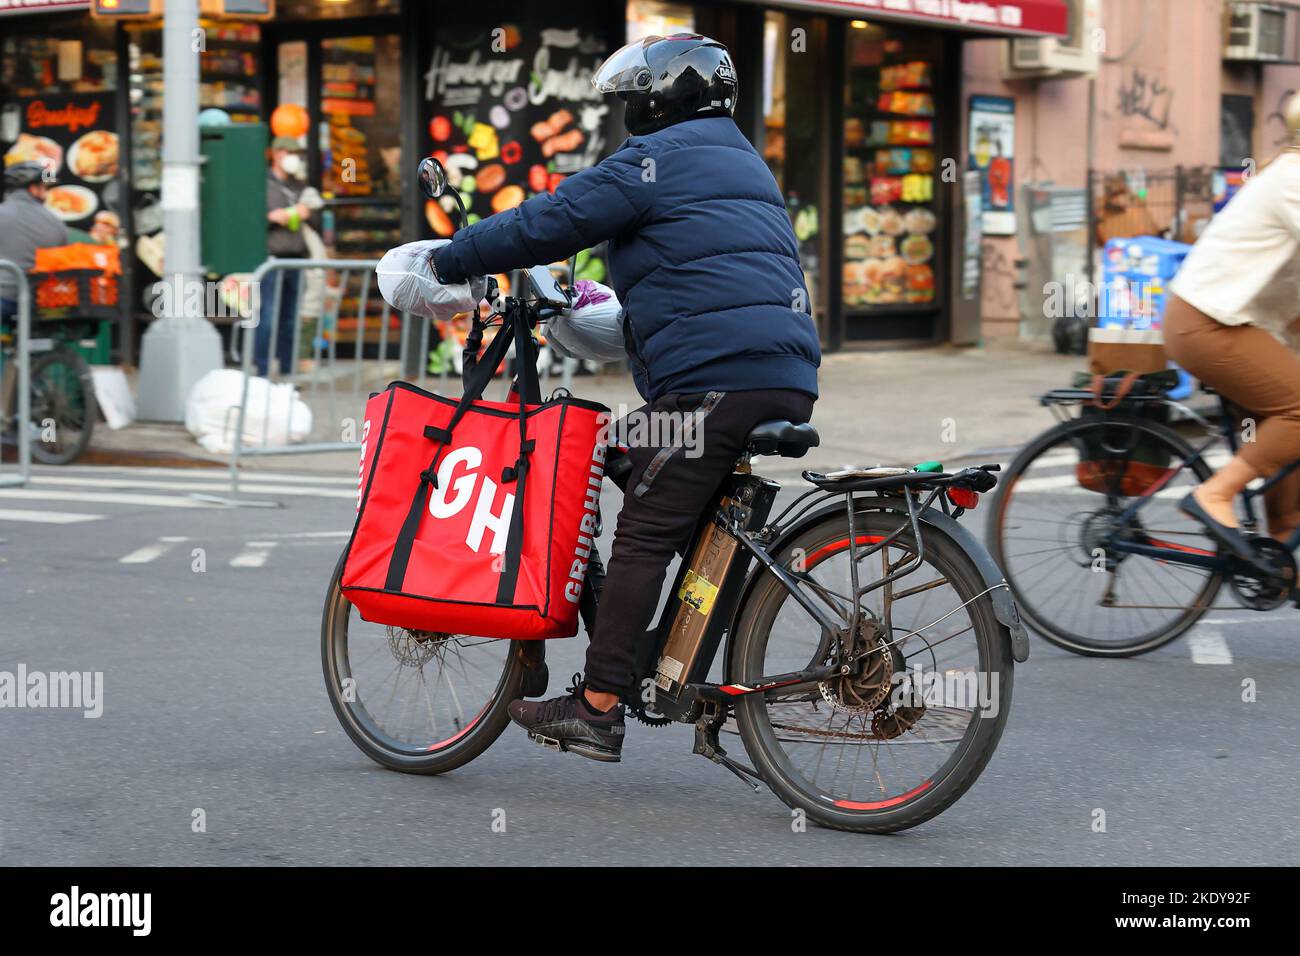 Un préposé à la livraison de nourriture Grubhub sur un vélo électrique à Brooklyn, New York Banque D'Images